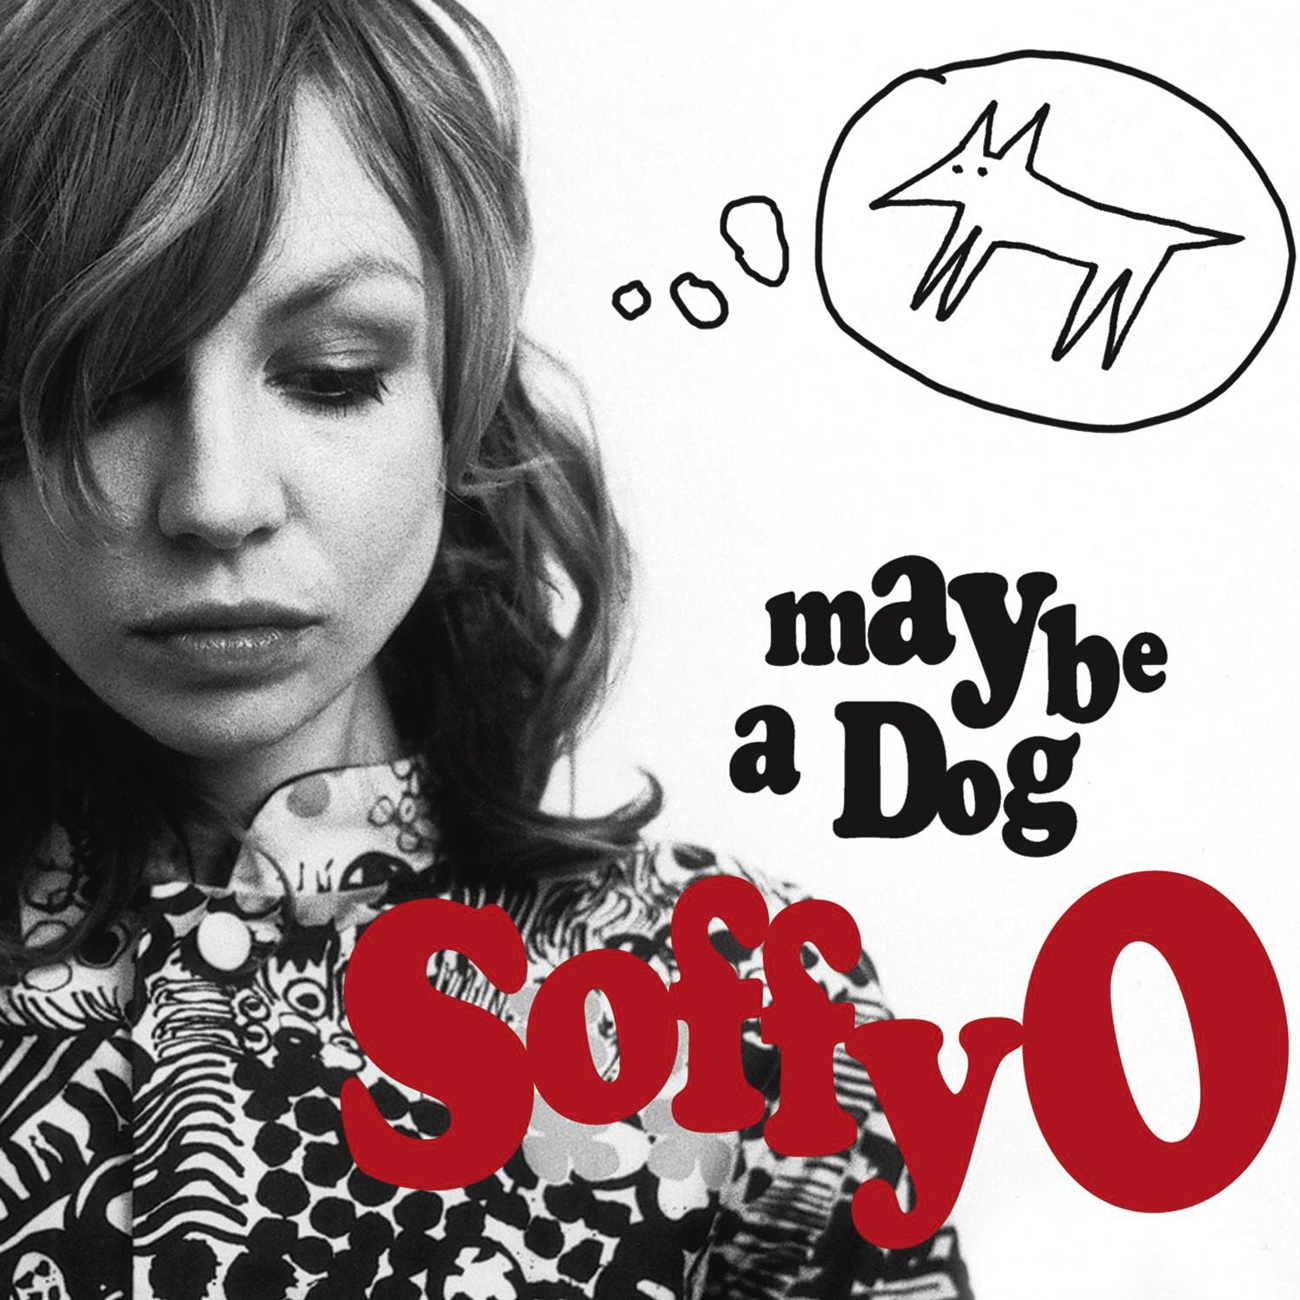 Maybe A Dog (Einmusik Remix)